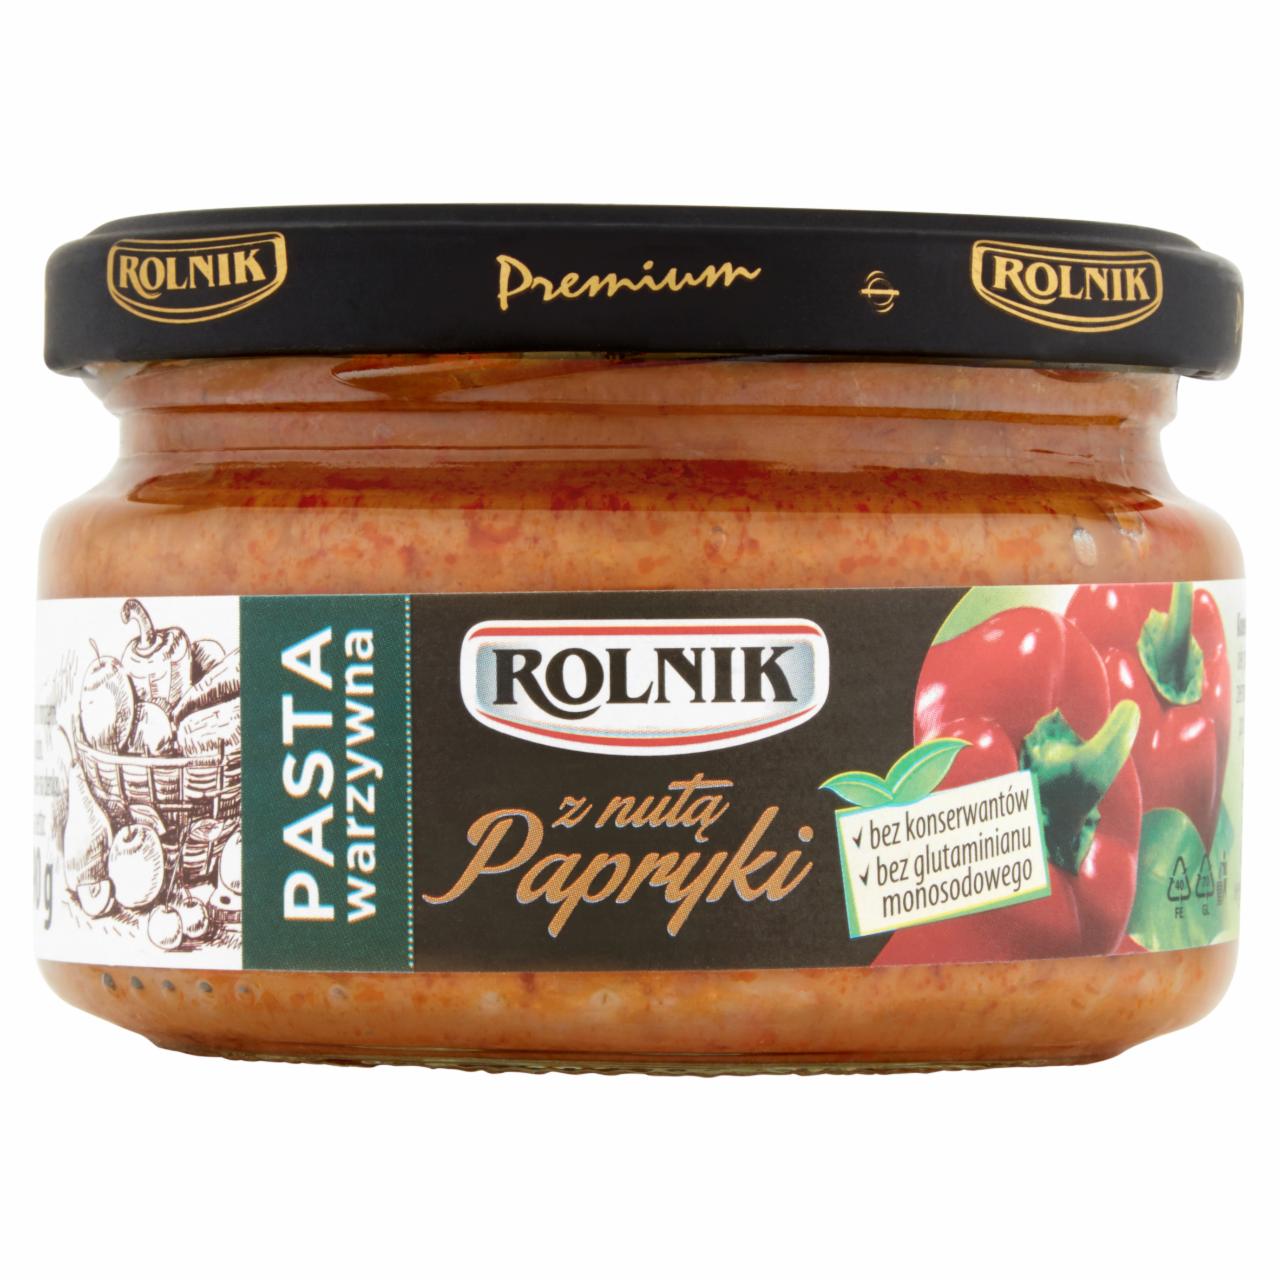 Zdjęcia - Rolnik Premium Pasta warzywna z nutą papryki 190 g